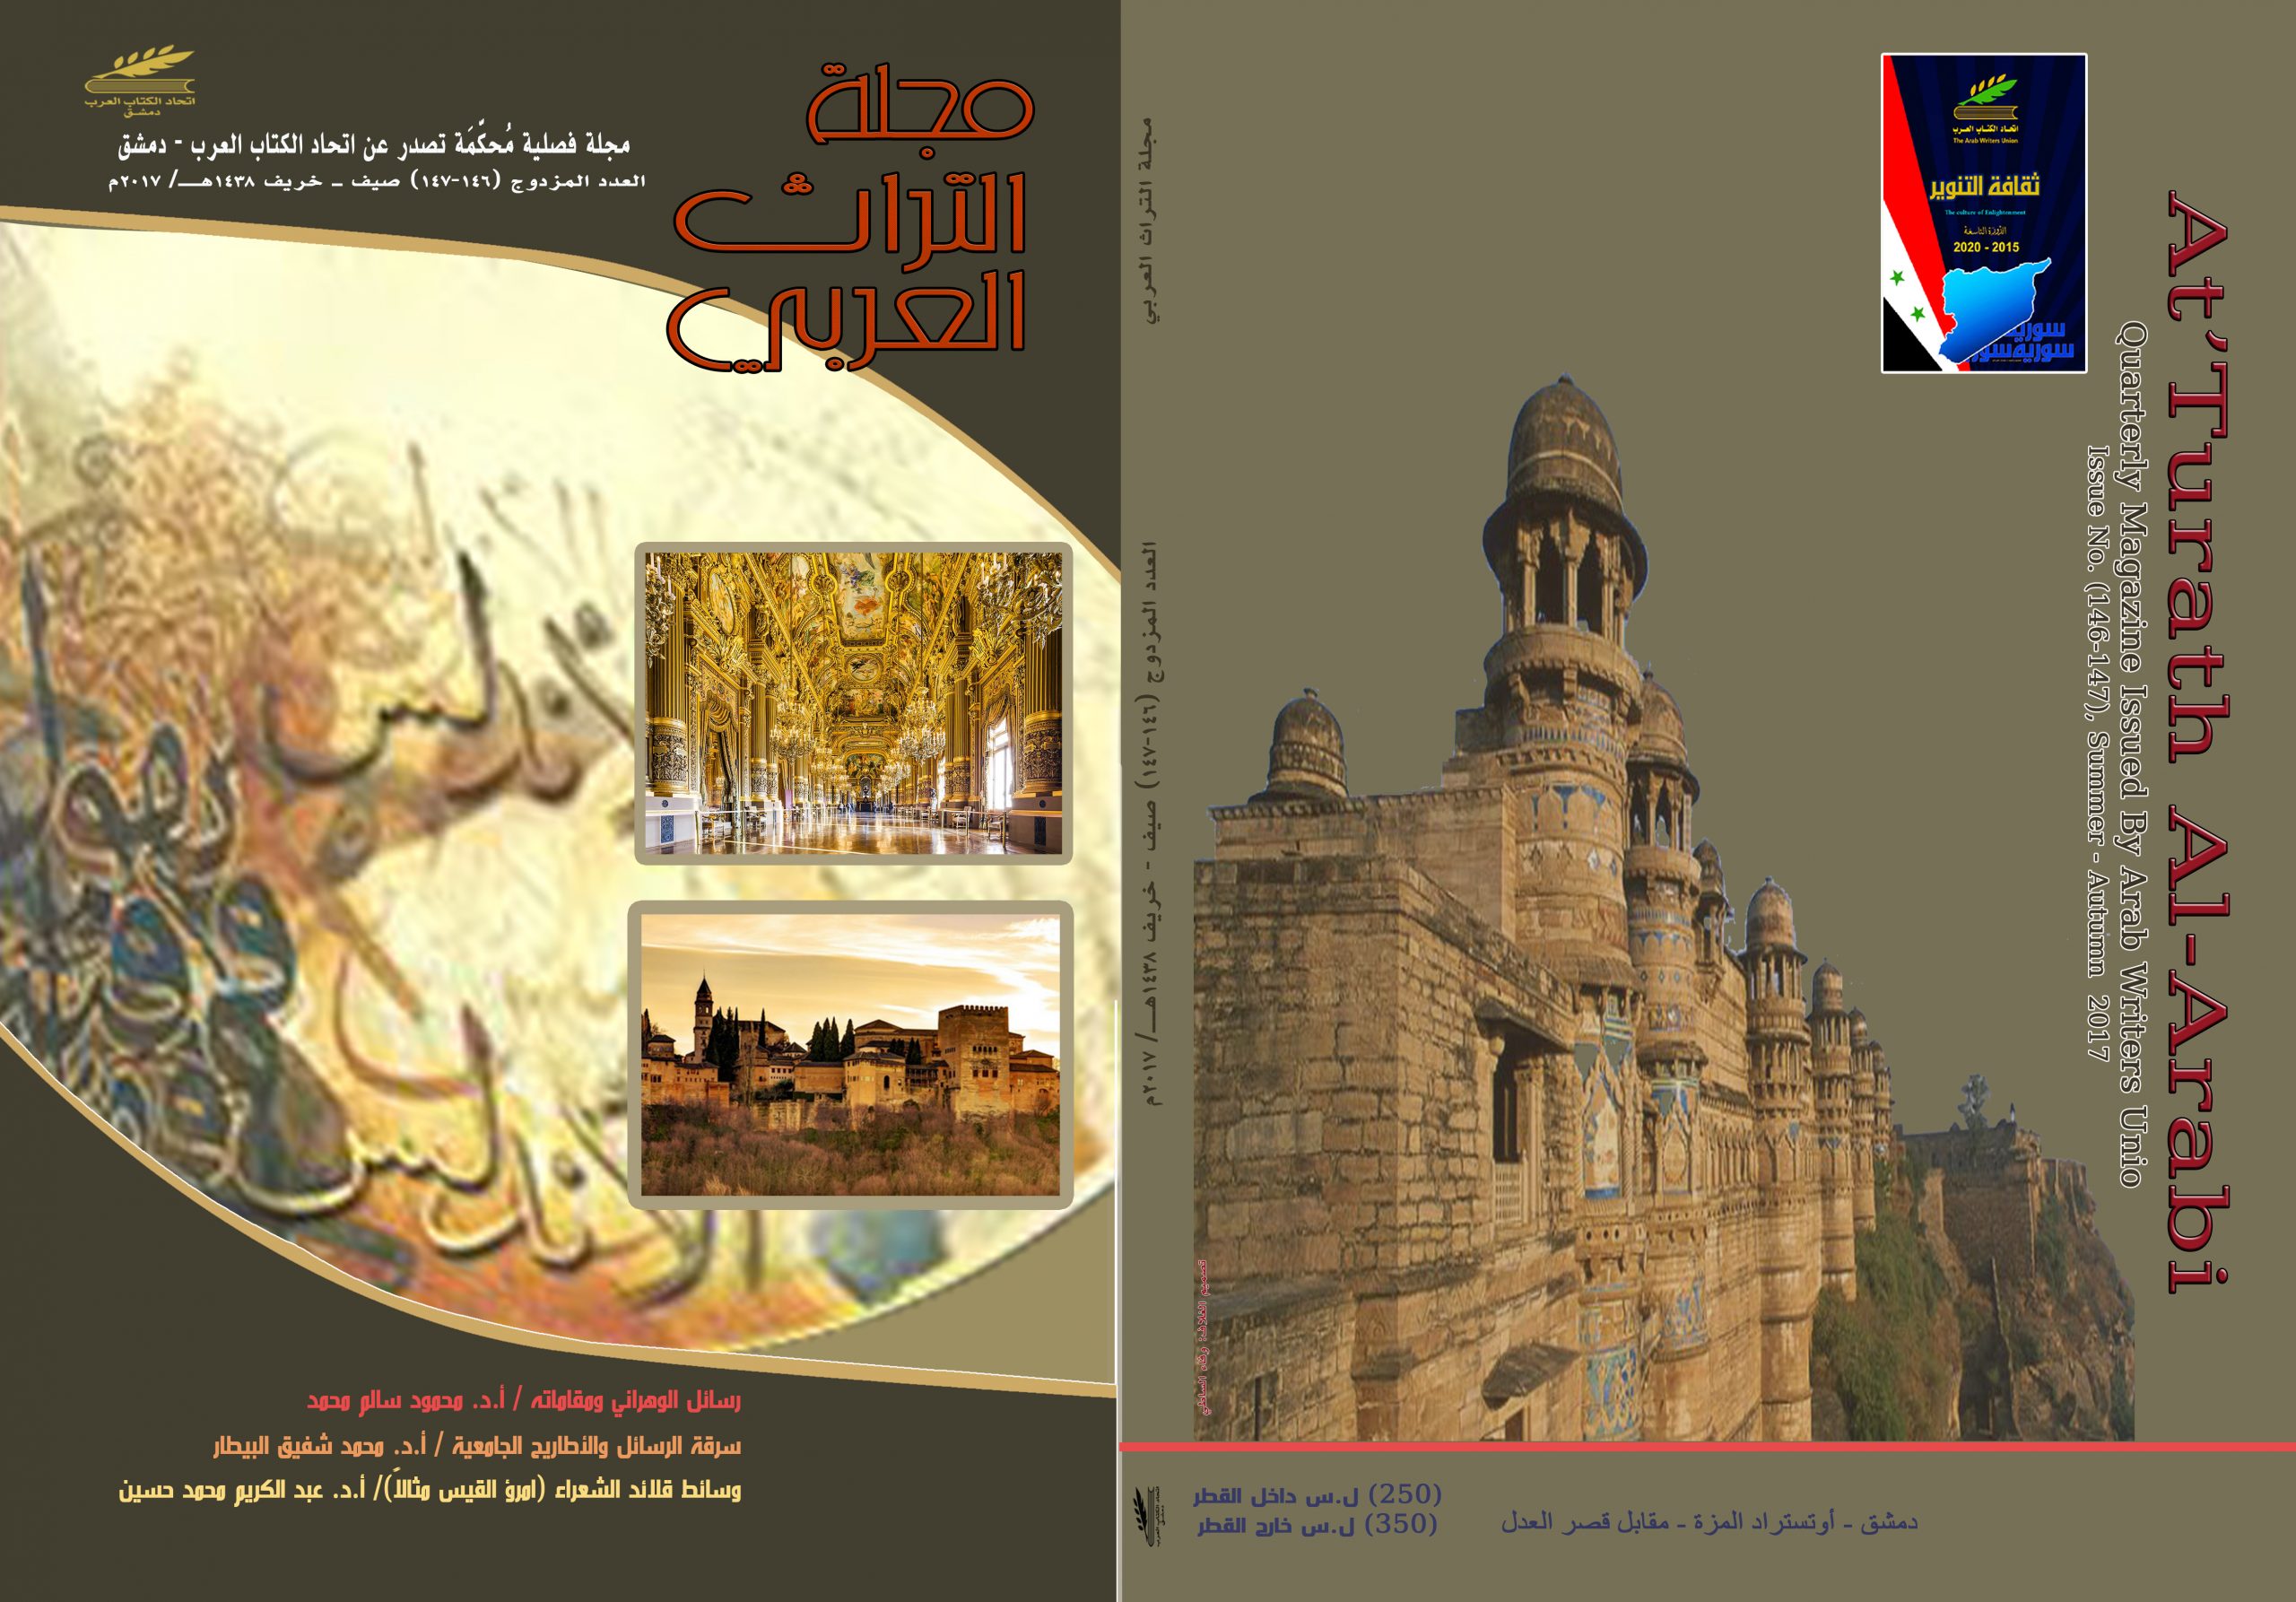 التراث العربي العدد المزدوج 146-147 صيف وخريف 1438 هـ - 2017 م